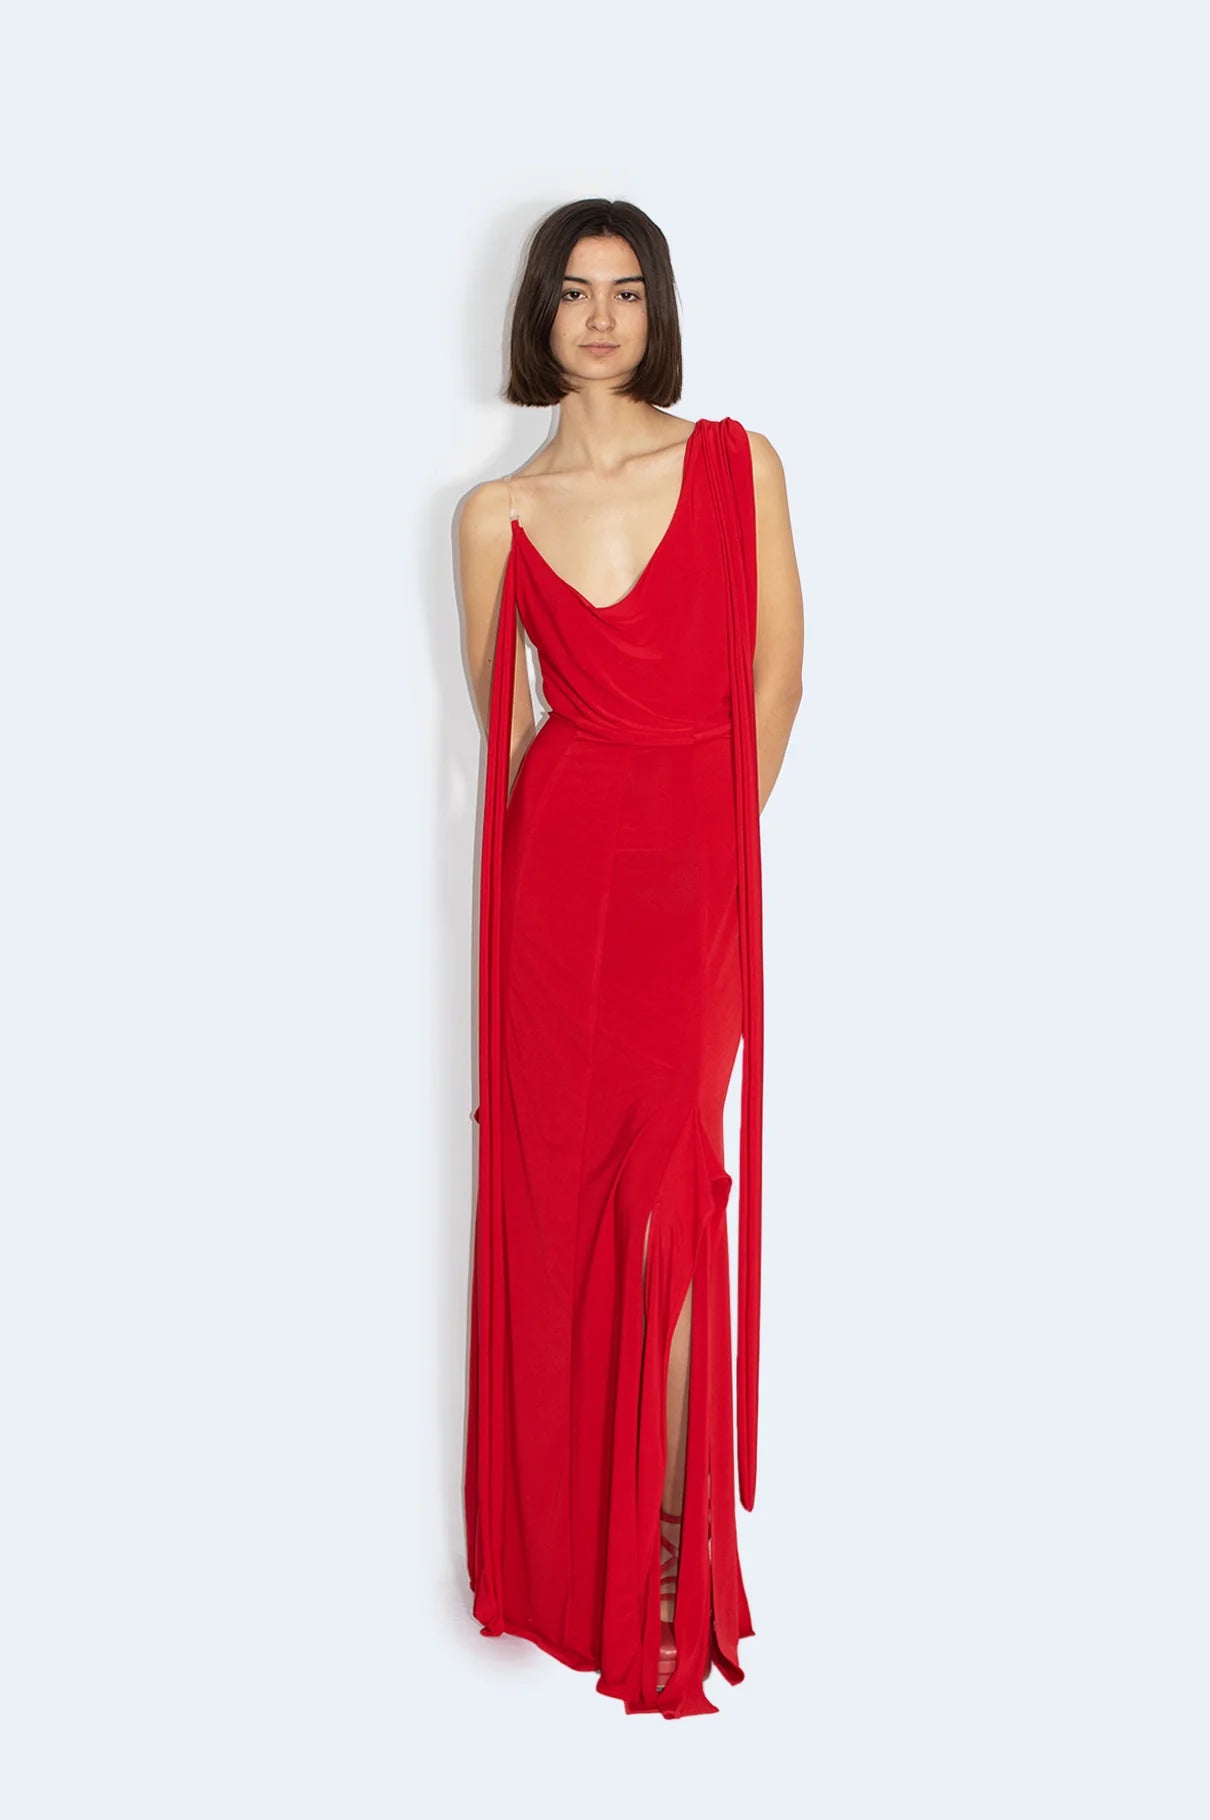 Red Asymmetric Knit Dress